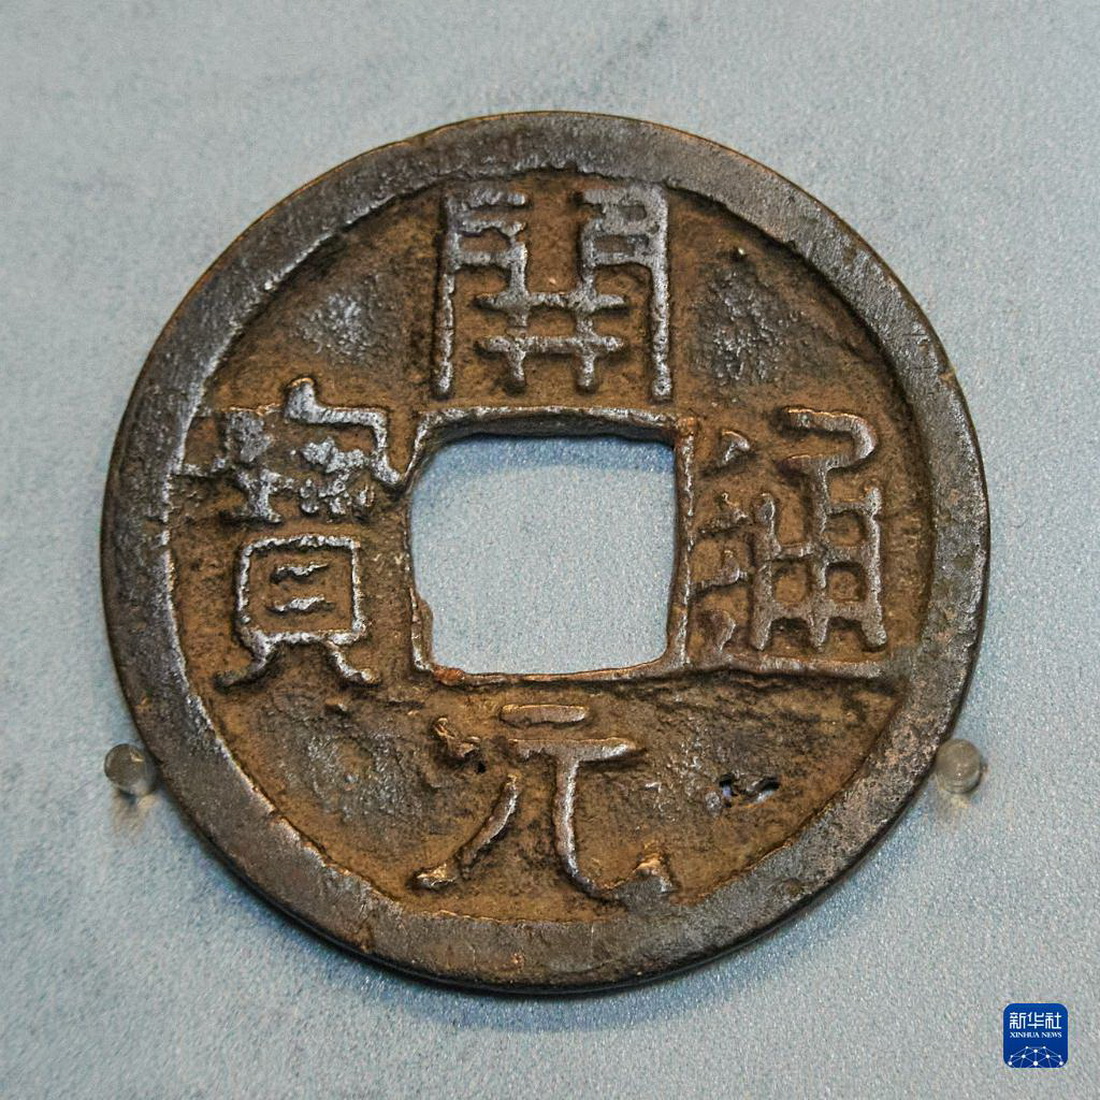 这是5月5日在奥地利维也纳艺术史博物馆“80枚硬币环游世界”硬币展上拍摄的中国唐代硬币。